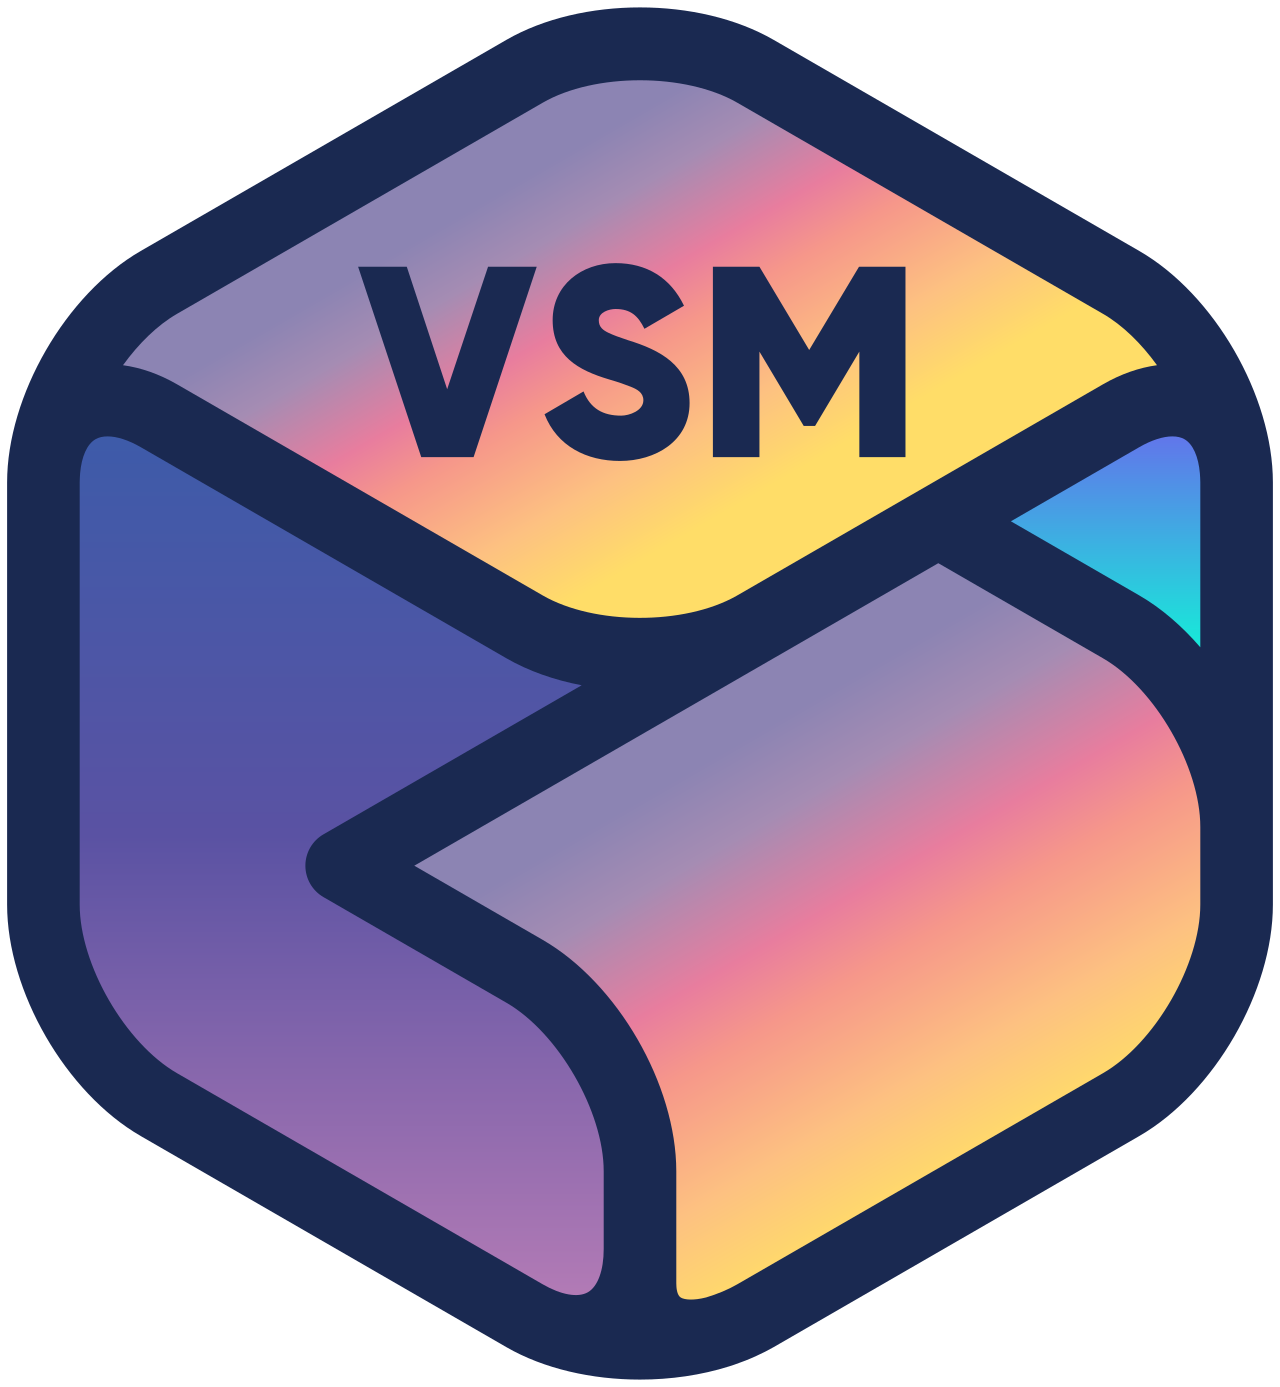 VSM's logo